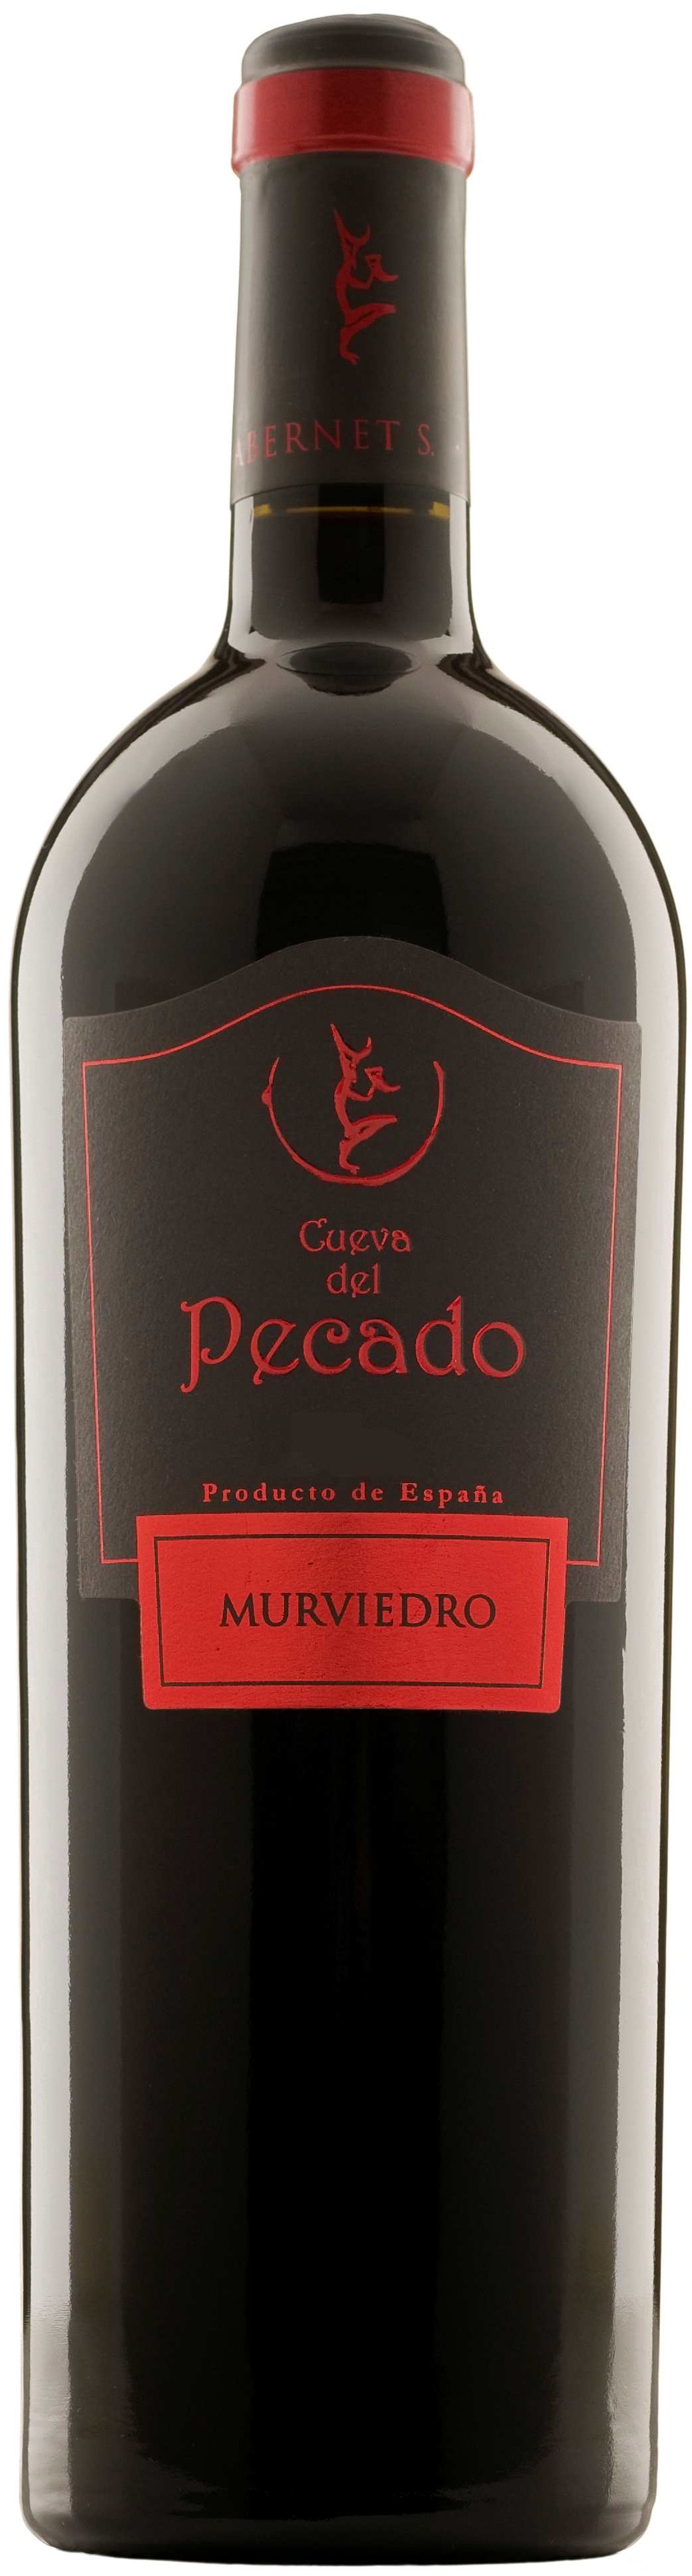 Image of Wine bottle Cueva del Pecado